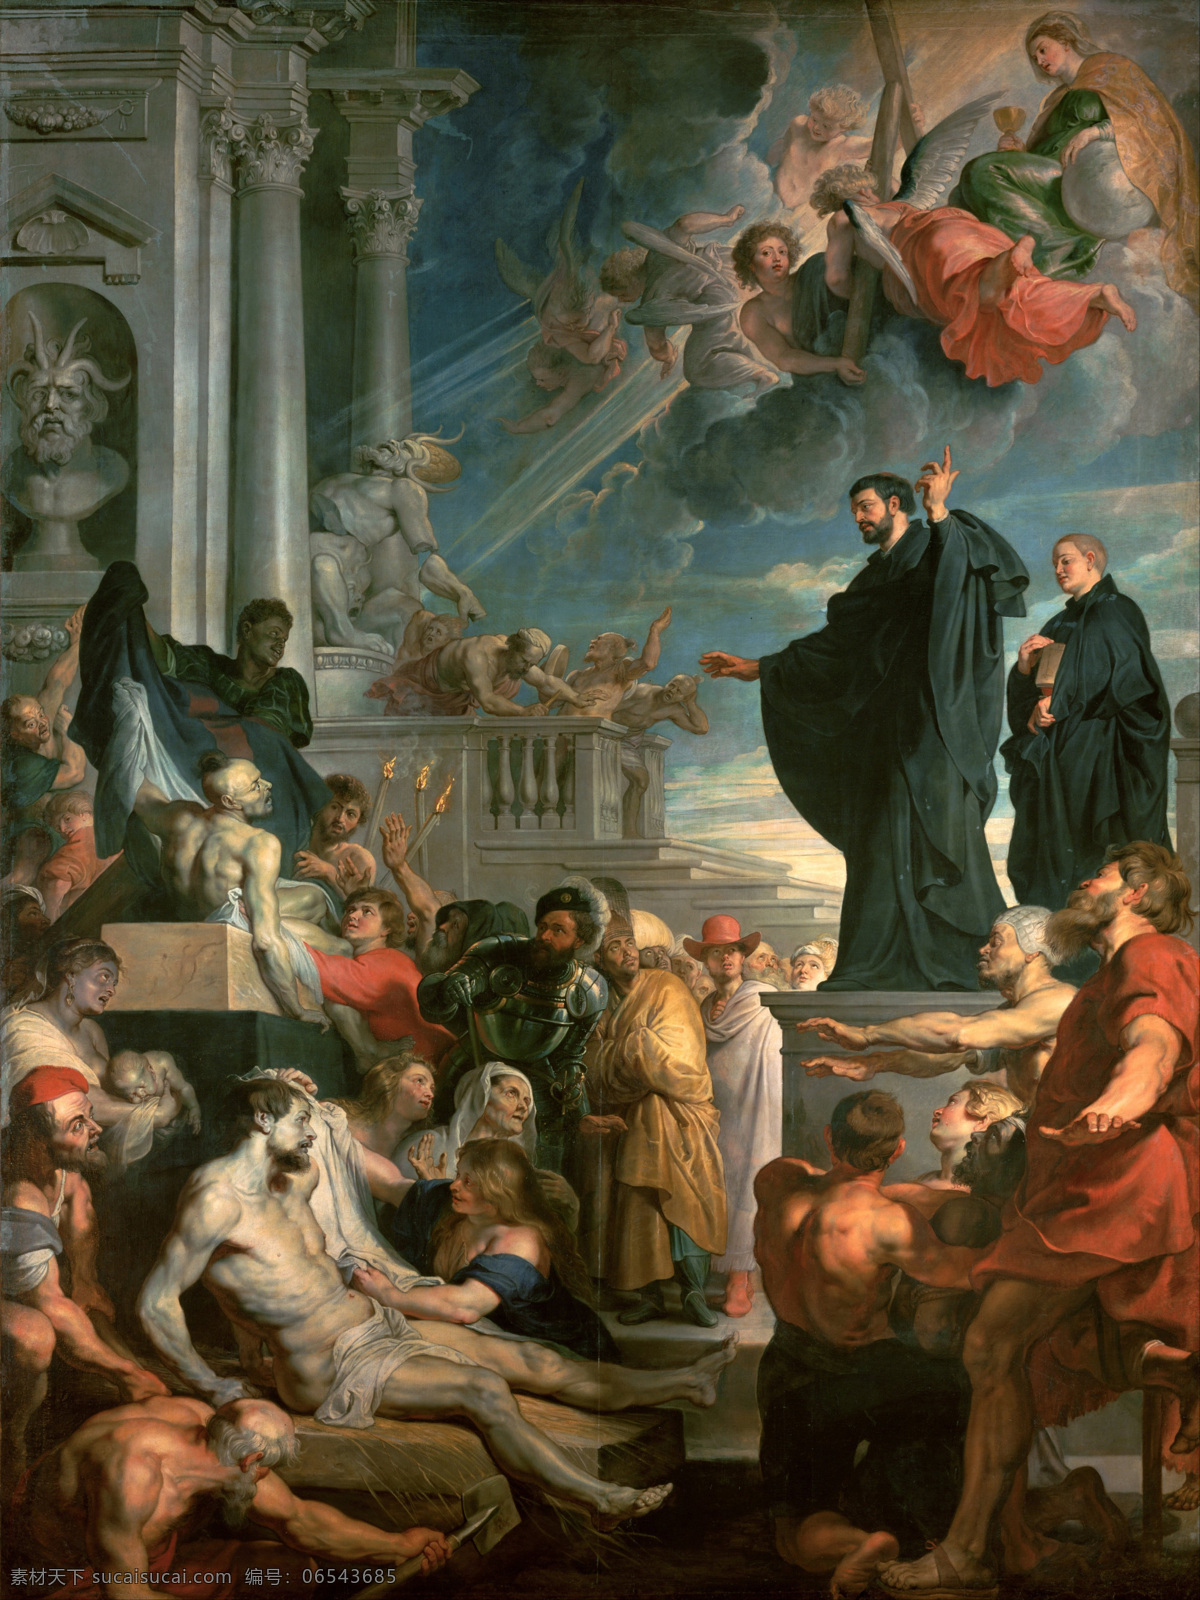 圣弗朗西斯 泽维尔 彼得保罗 鲁本斯 作品 西方古典油画 奇迹 巴洛克式 艺术史博物馆 宣教 宗教艺术 牧师 彼得 保罗 绘画书法 文化艺术